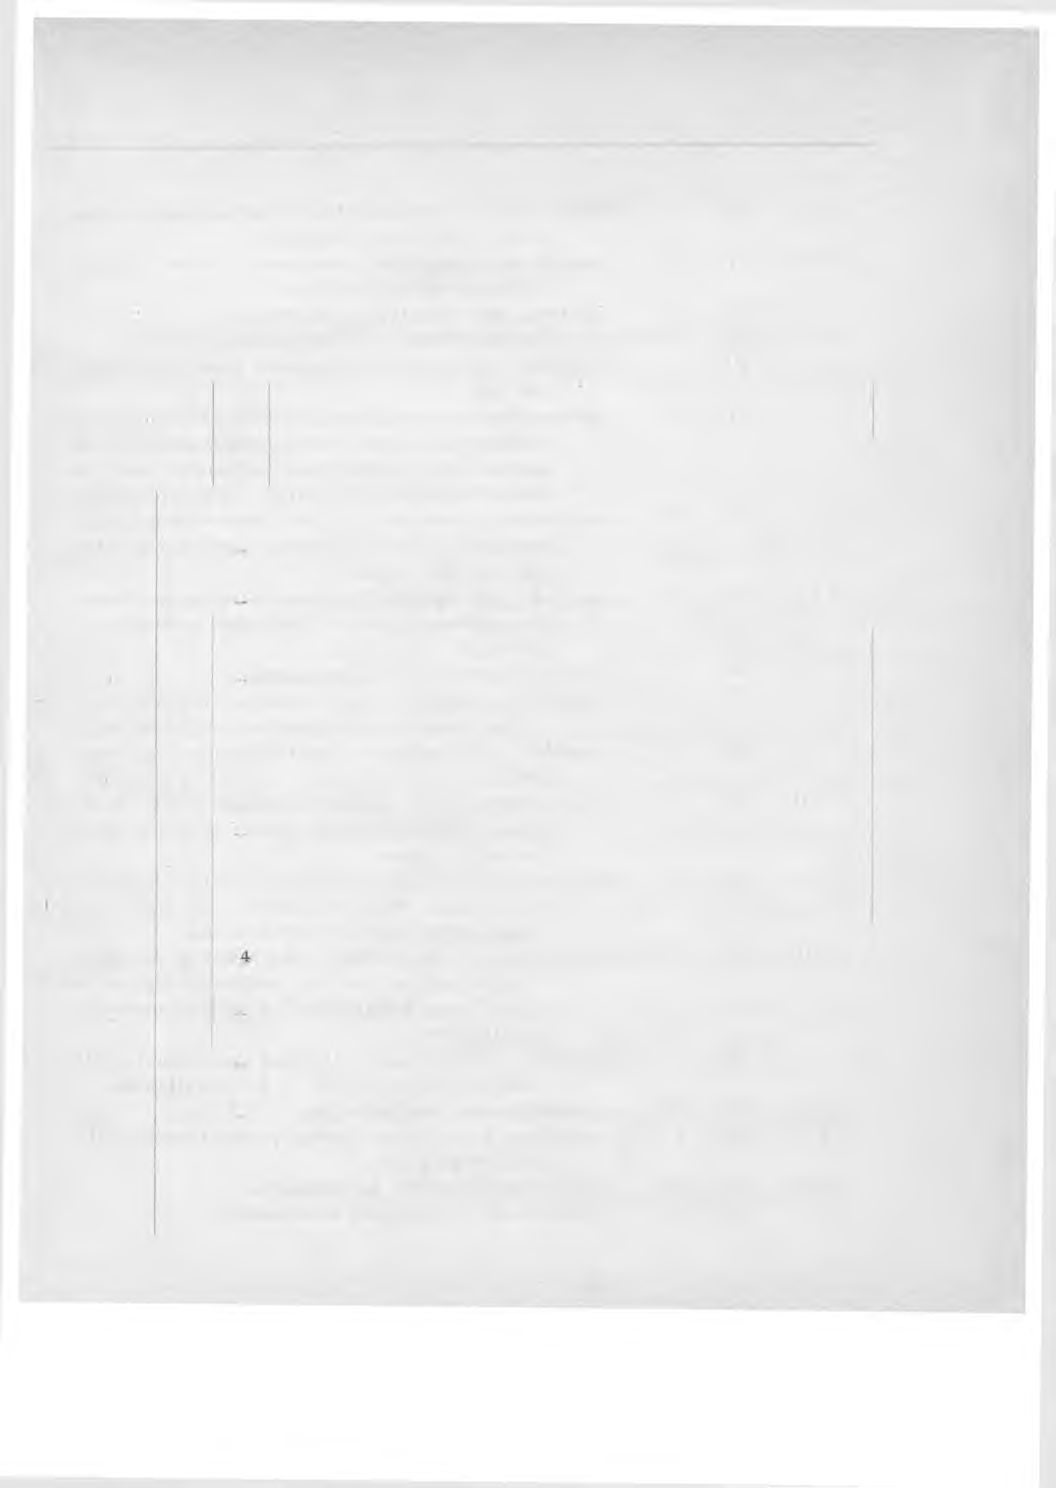 Luettelo Suomen Postihallituksen kiertokirjeistä vuodelta 1913. Numero Päivämäärä Sisällys I 1 27 1 Koskeva postitoimiston toiminnan rajoittam ista ja postitoimistojen siirtämistä.